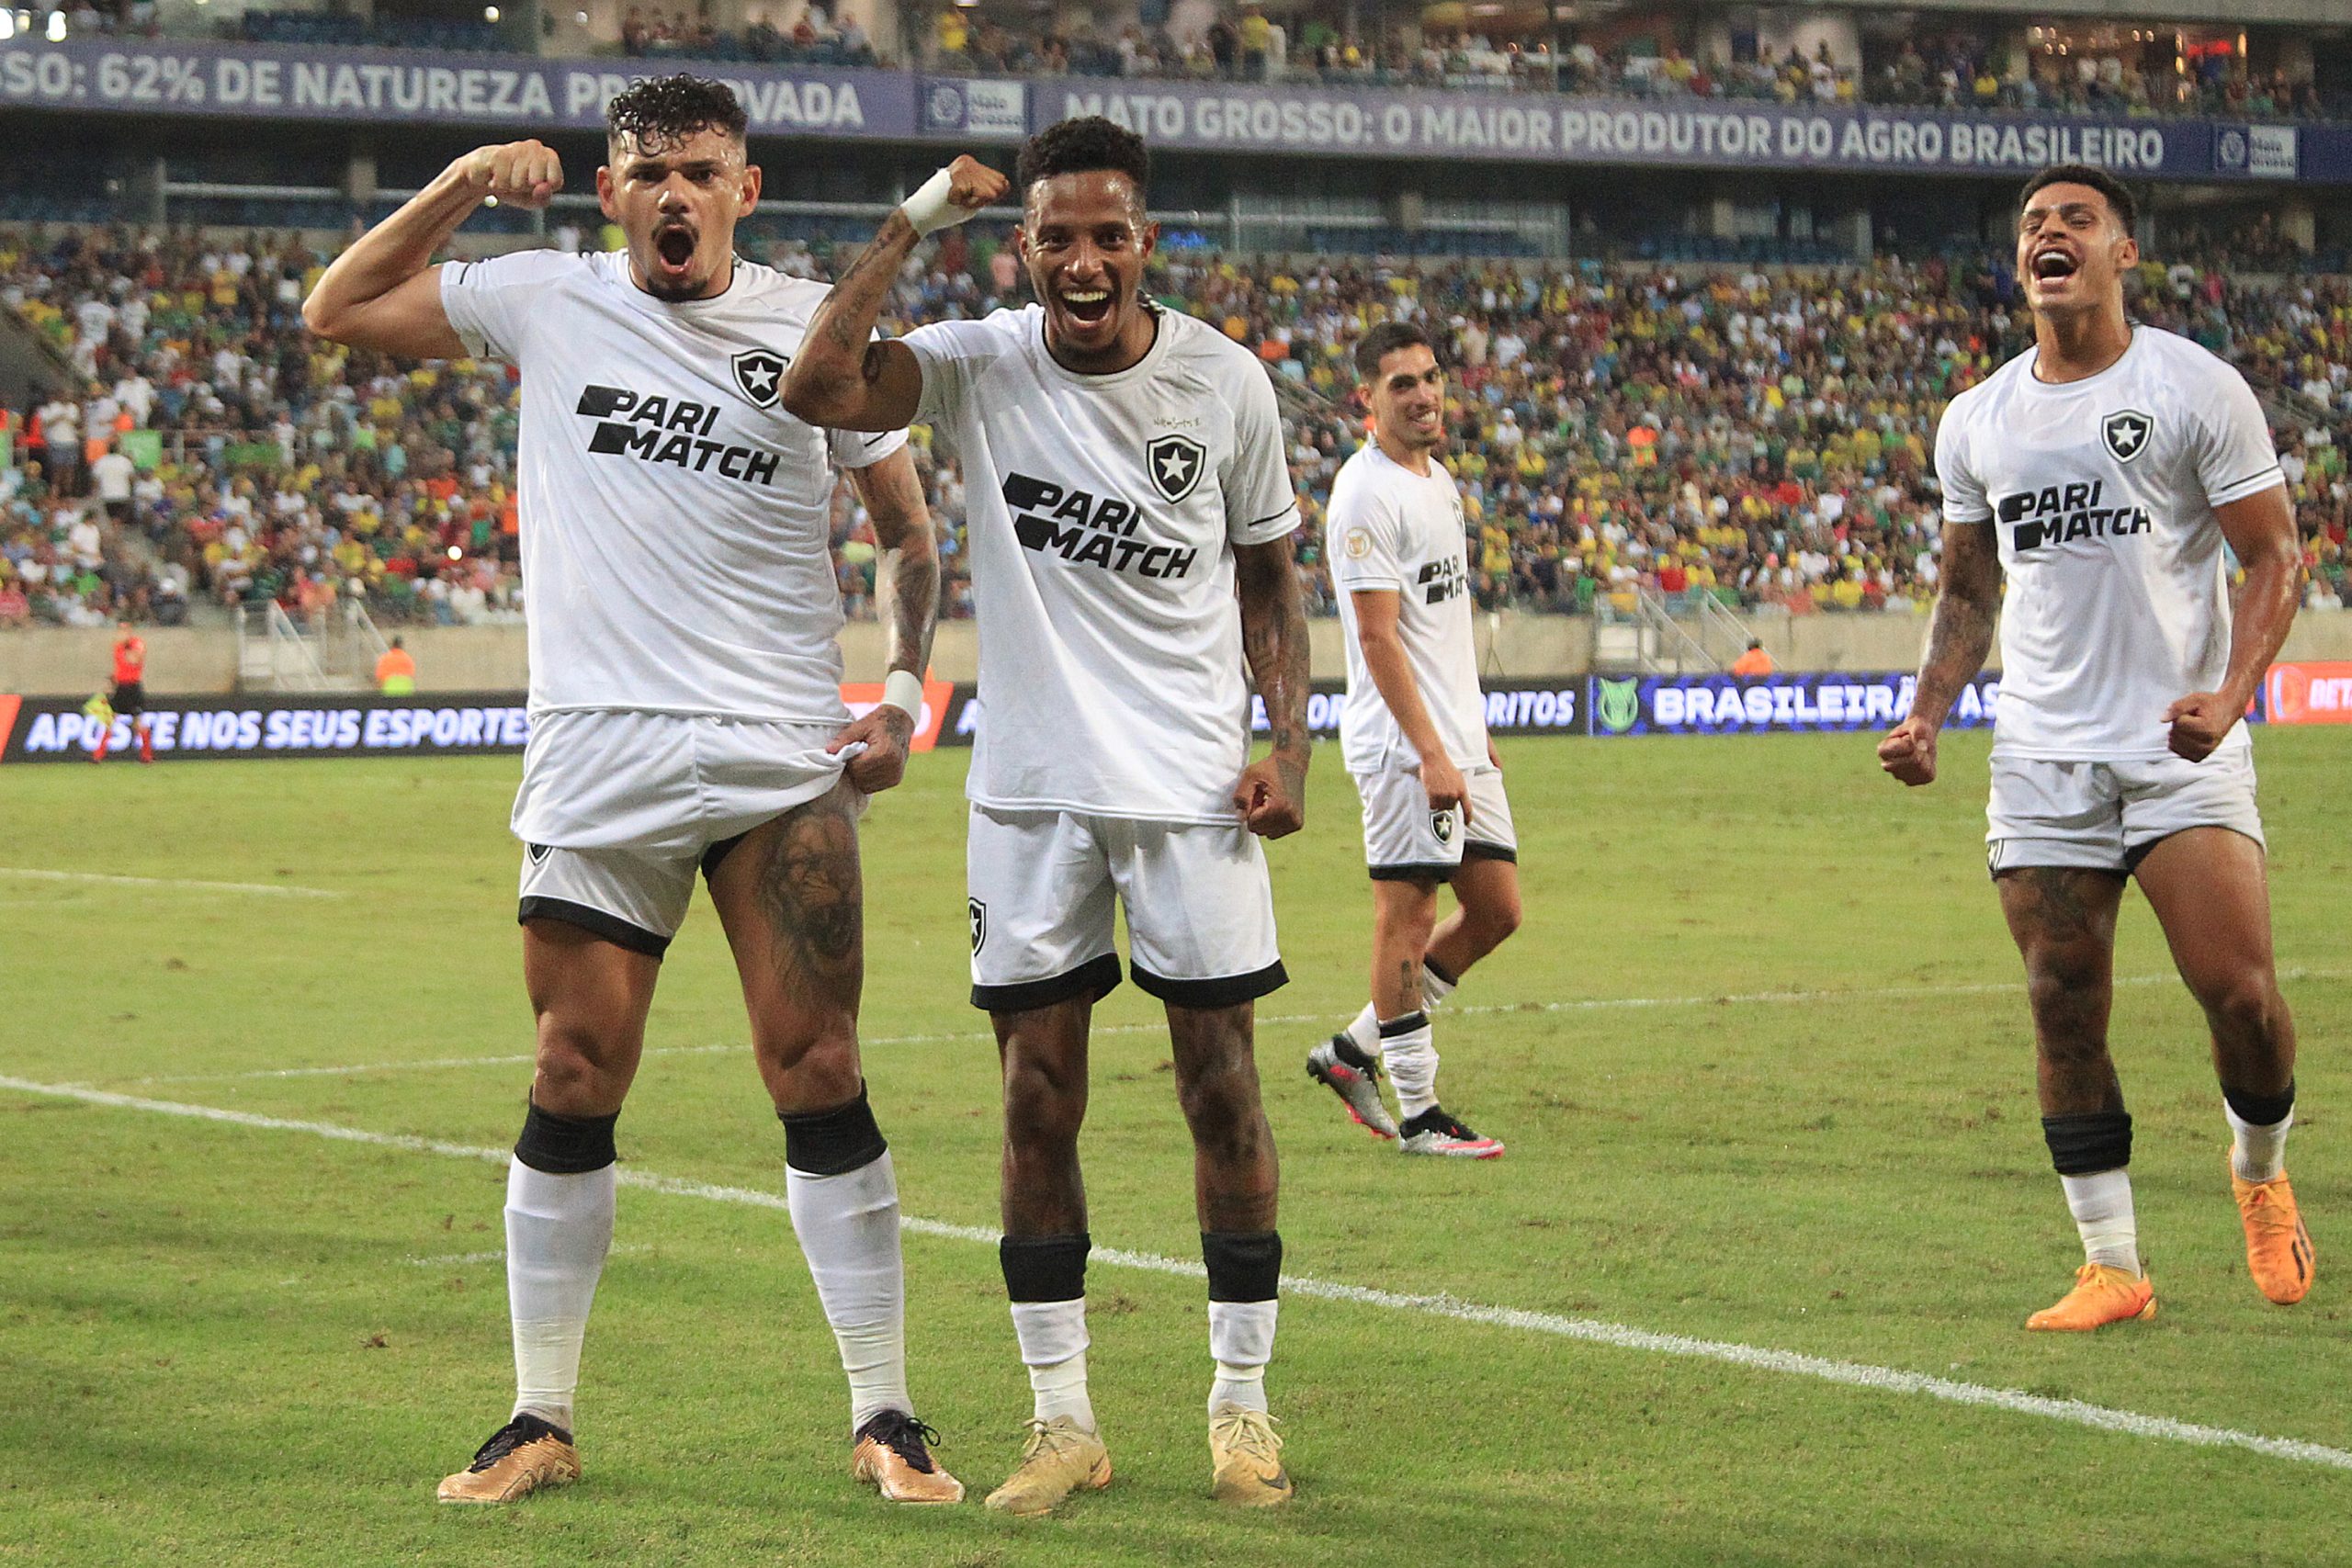 Botafogo venceu o Cuiaba com gol de TIquinho Soares de penalti. Com o resultado a equipe continua na ldierança do campeonato